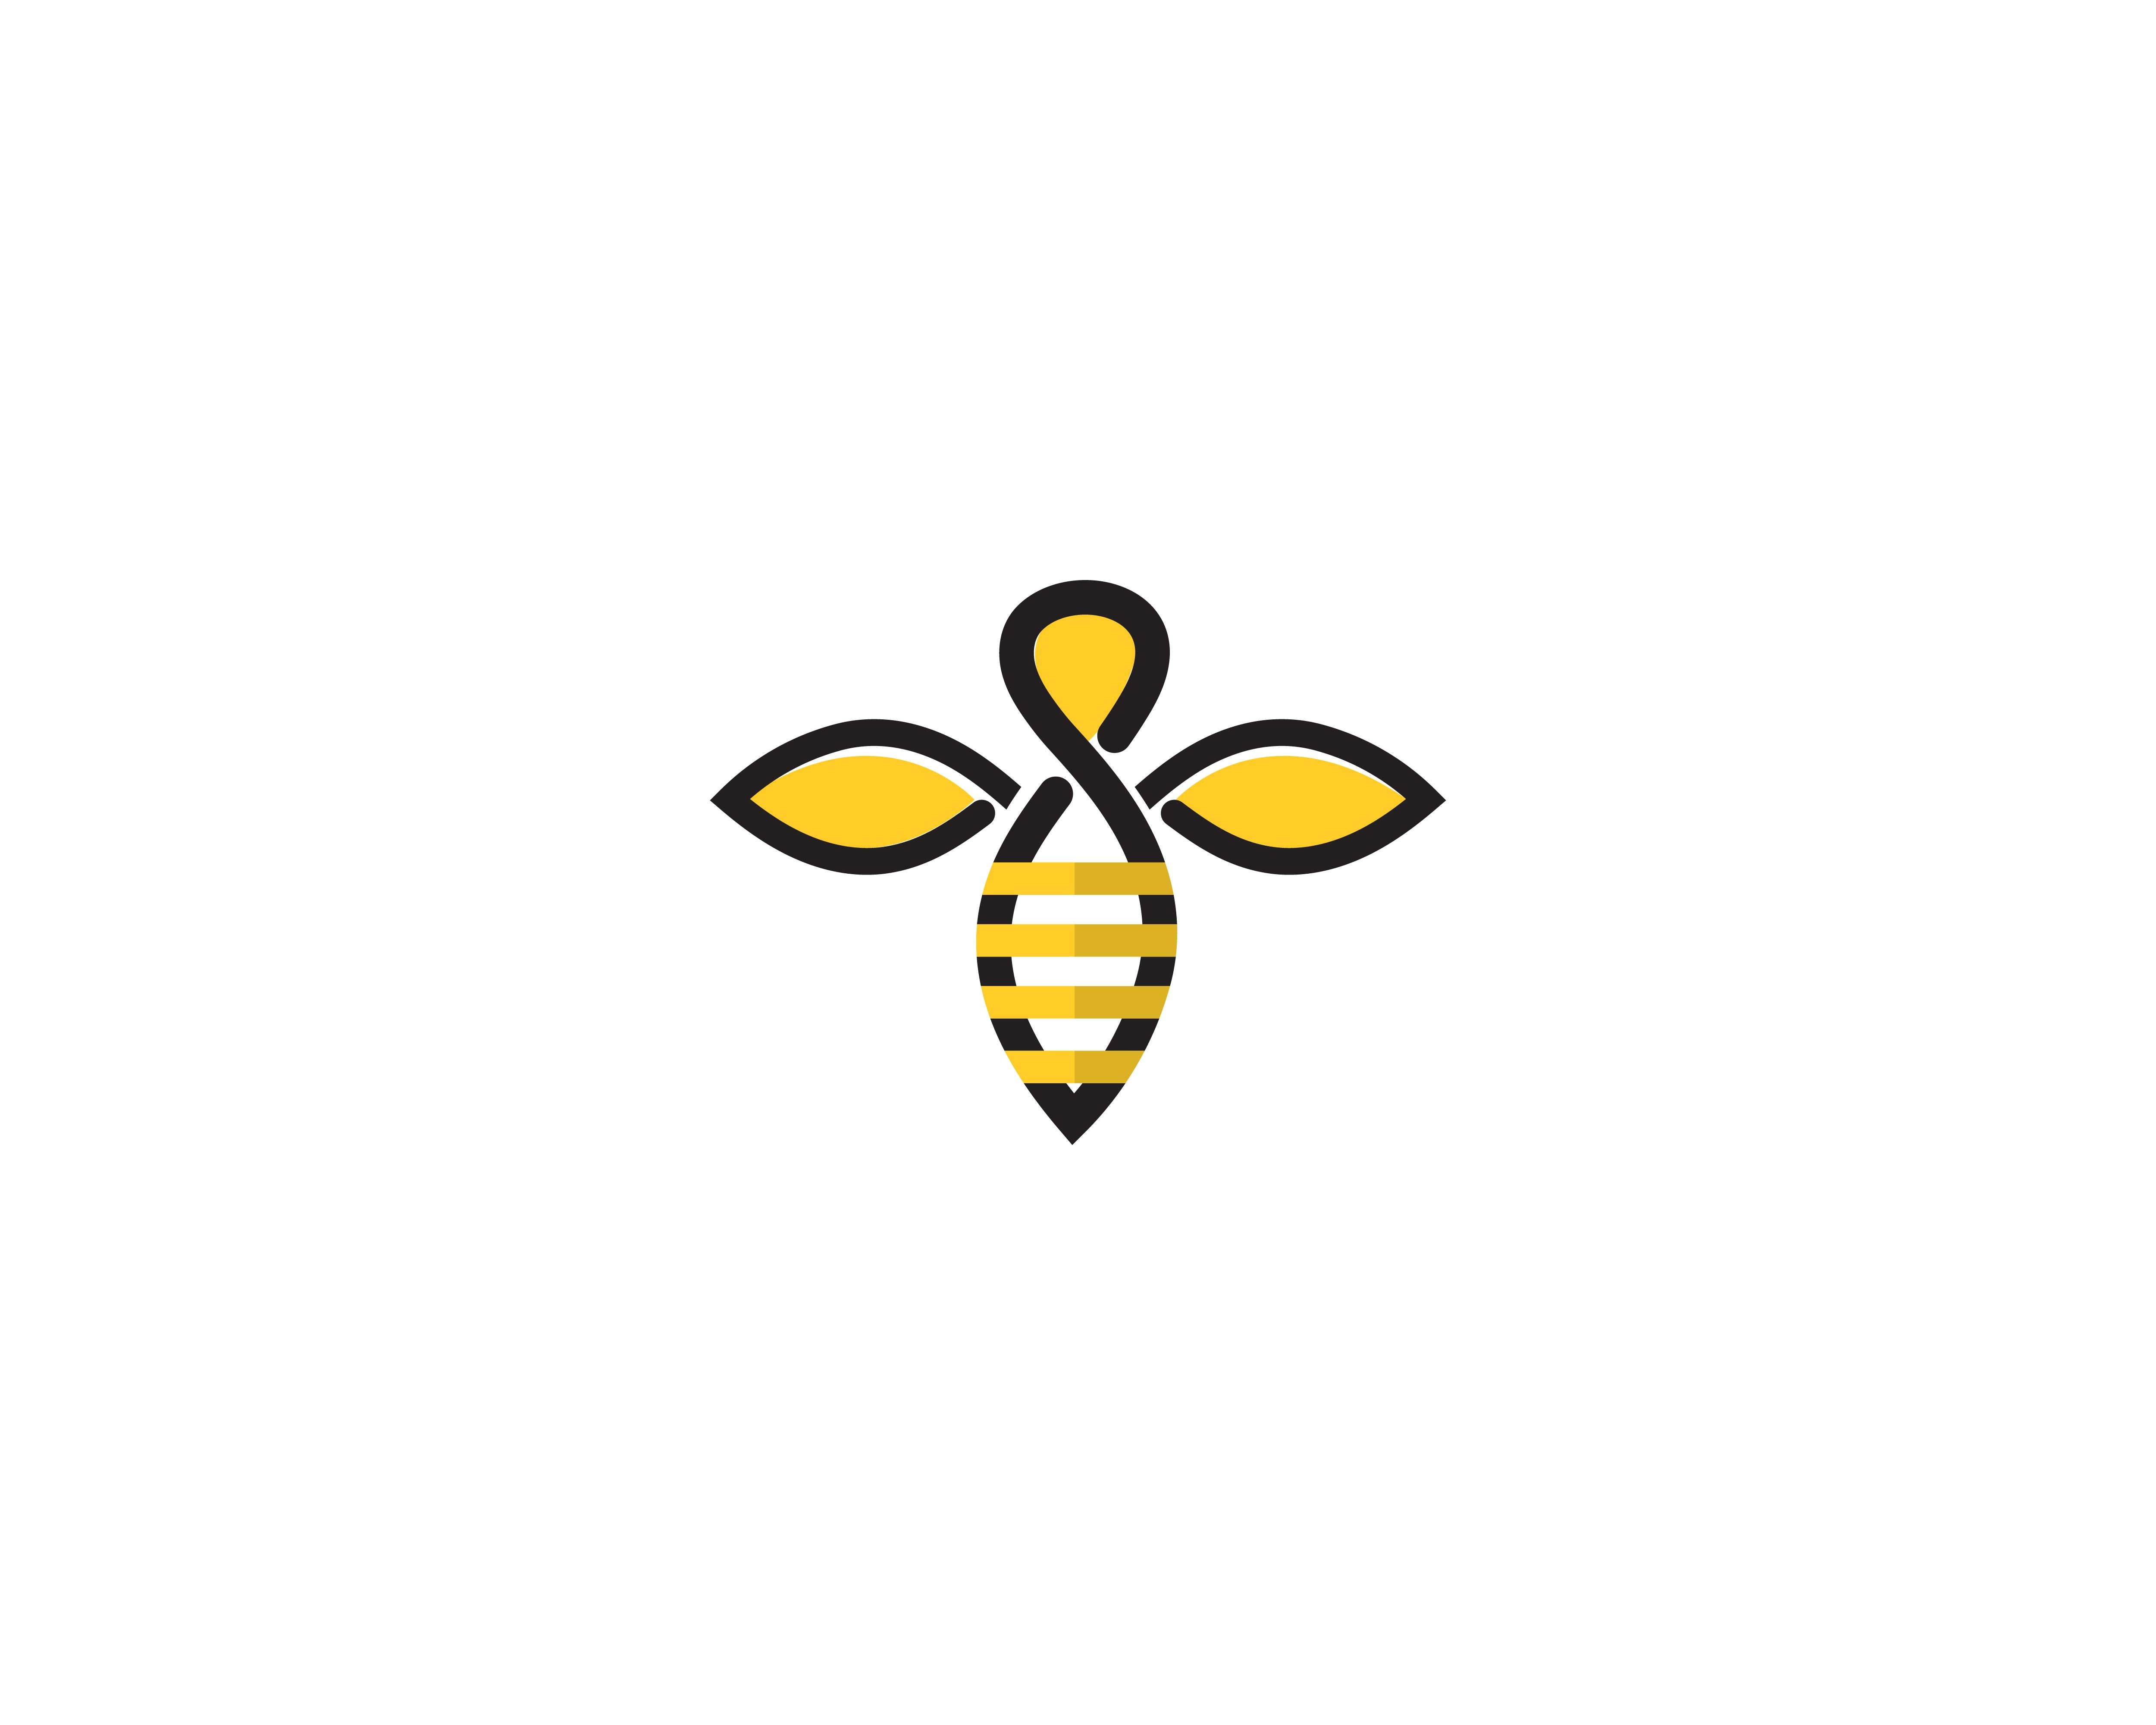 Логотип пчелы в высоком качестве